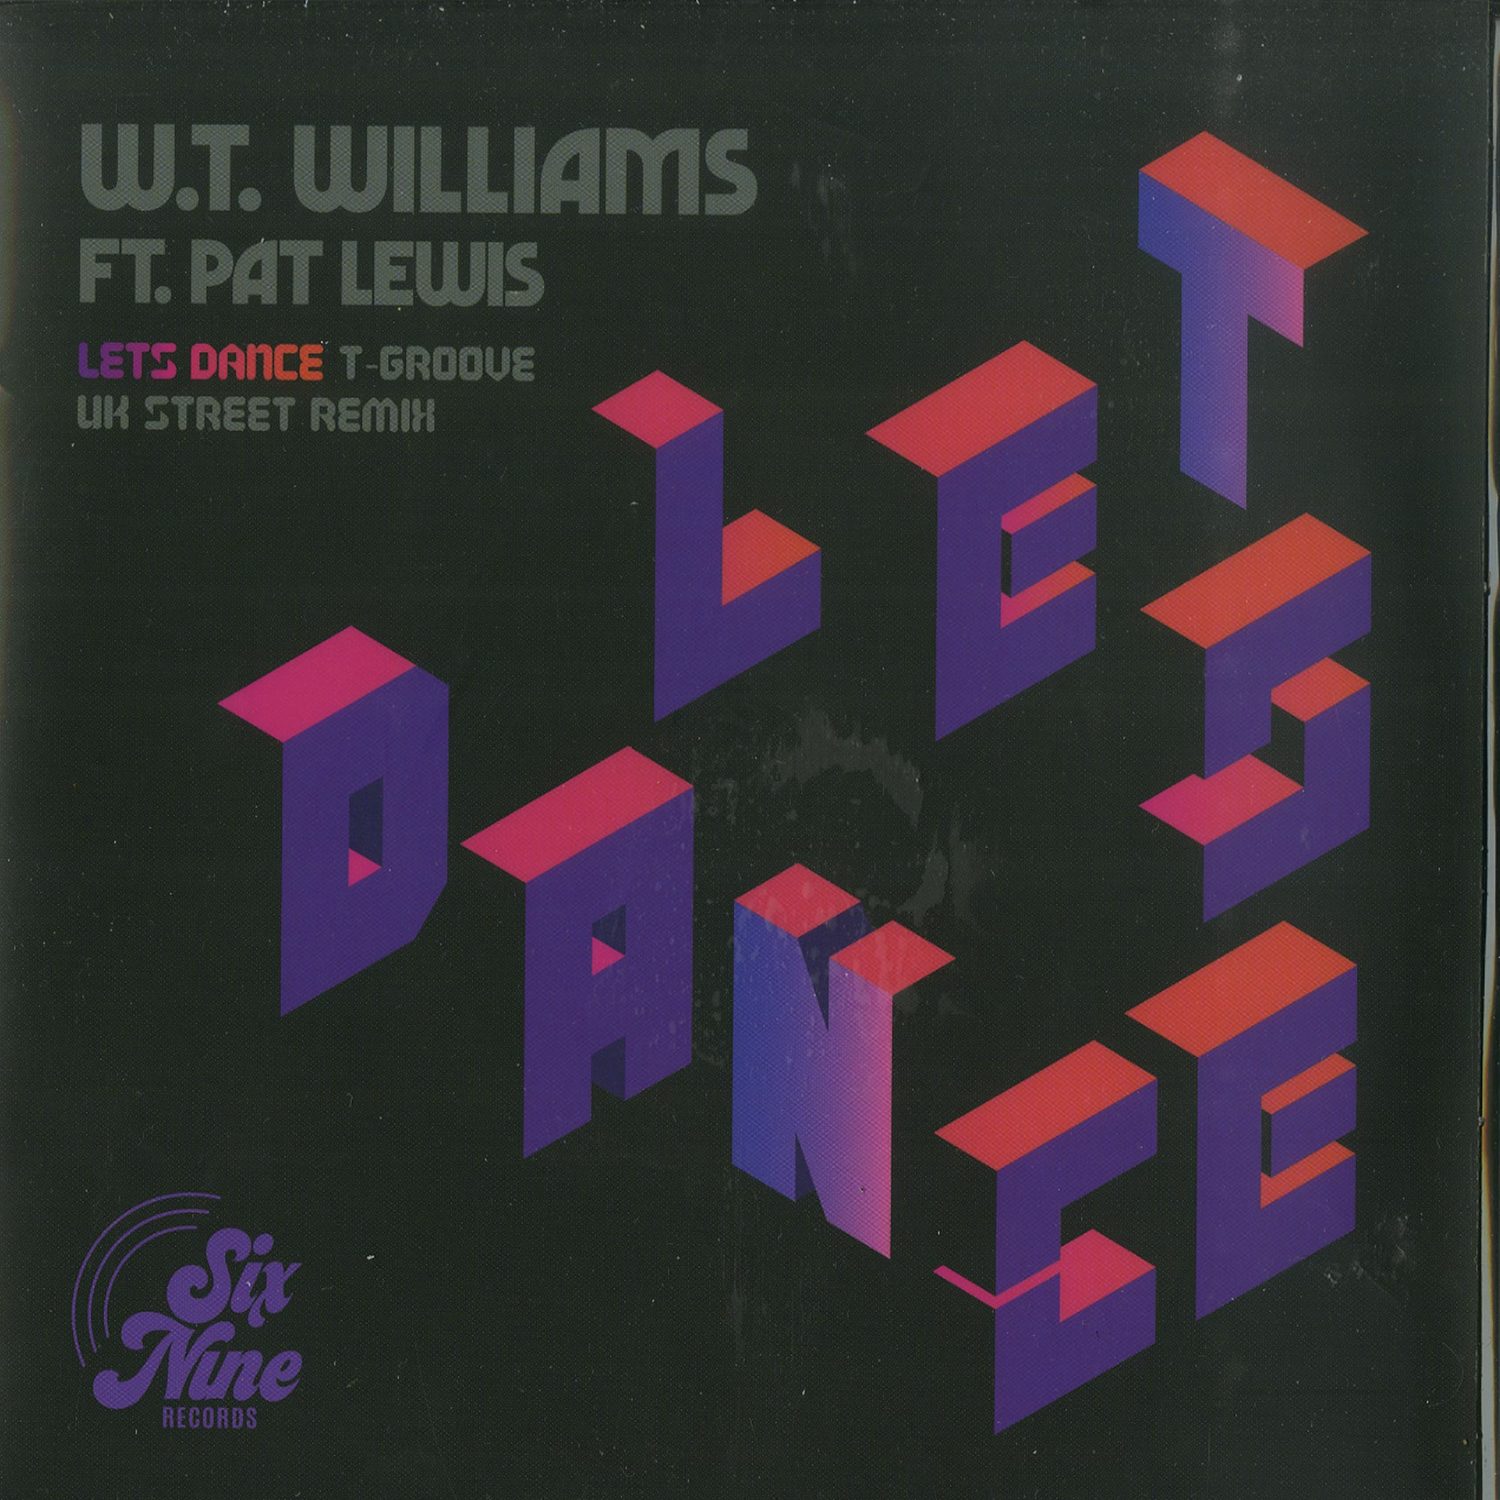 W.T. Williams ft. Pat Lewis - LETS DANCE 